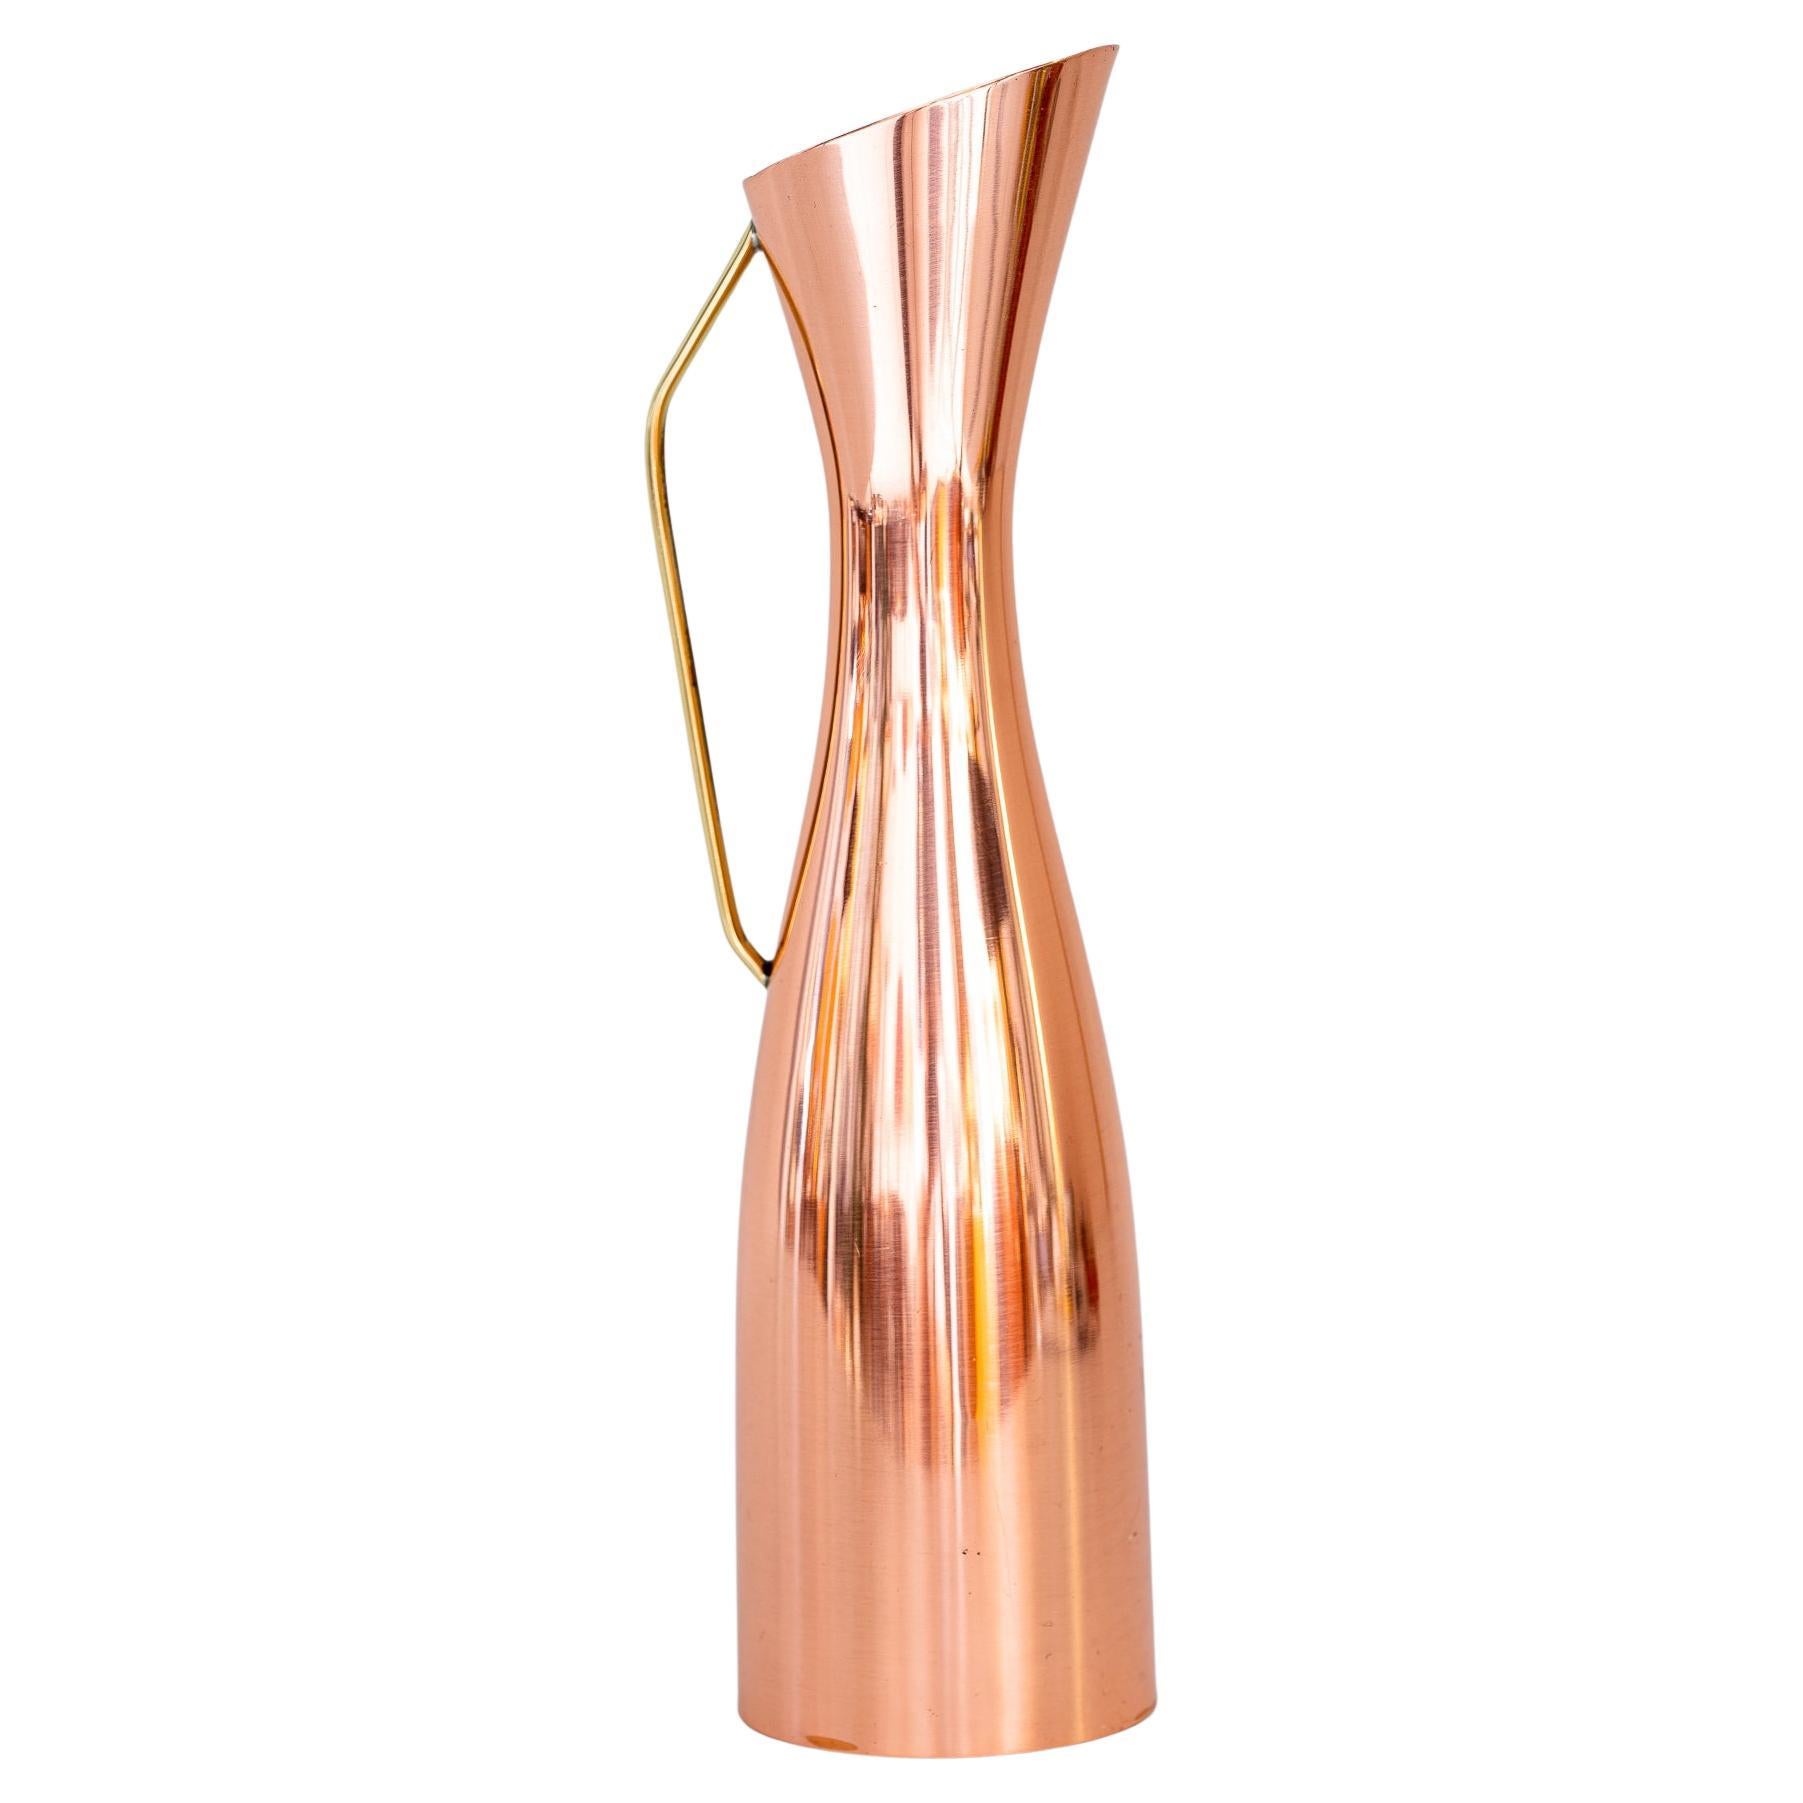 Flower Vase or Can Copper Brass Conbination Vienna Around 1950s For Sale